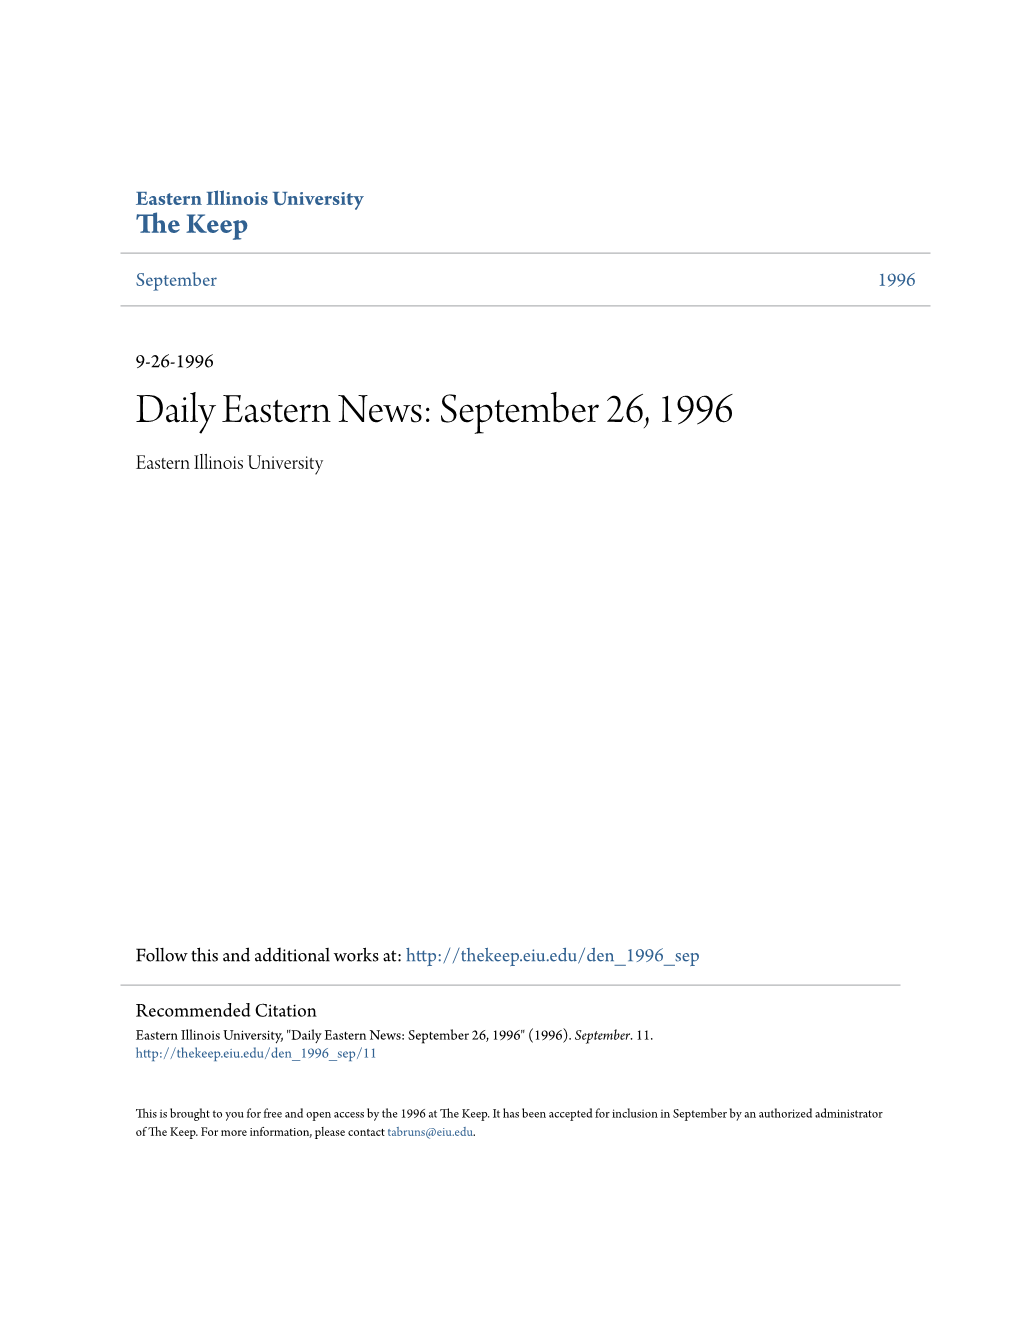 Daily Eastern News: September 26, 1996 Eastern Illinois University